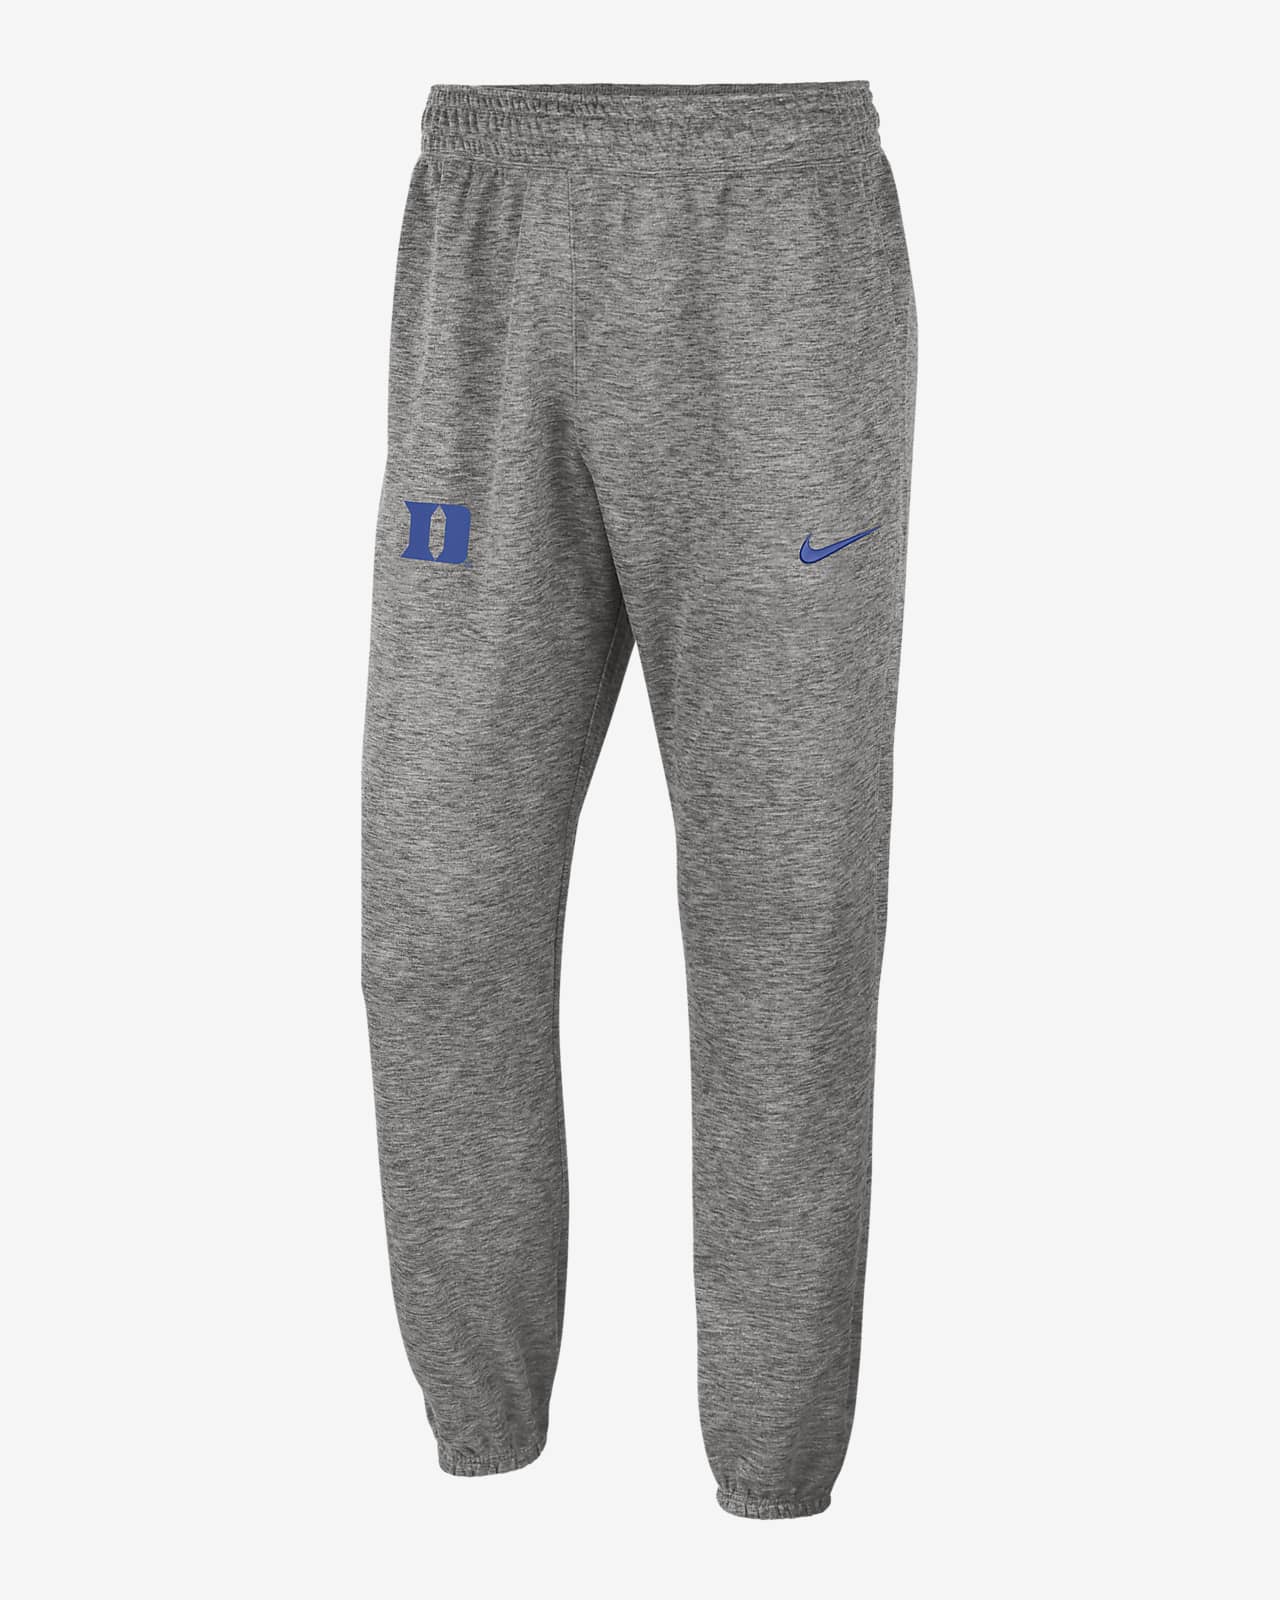 Nike College Dri-FIT Spotlight (Duke) Men's Pants